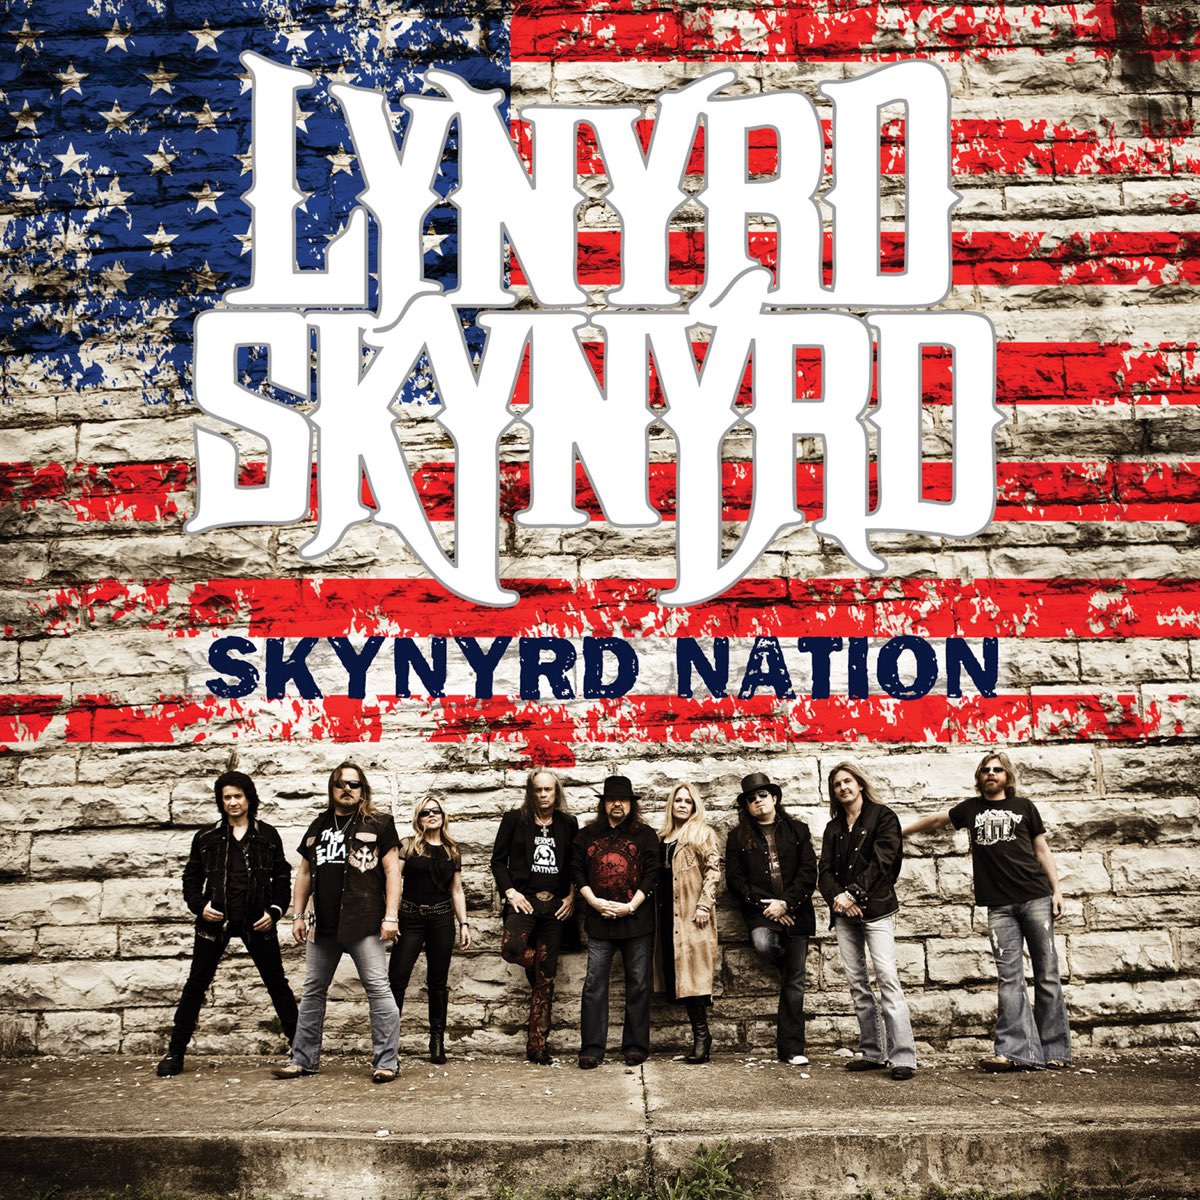 Skynyrd Nation by Lynyrd Skynyrd.